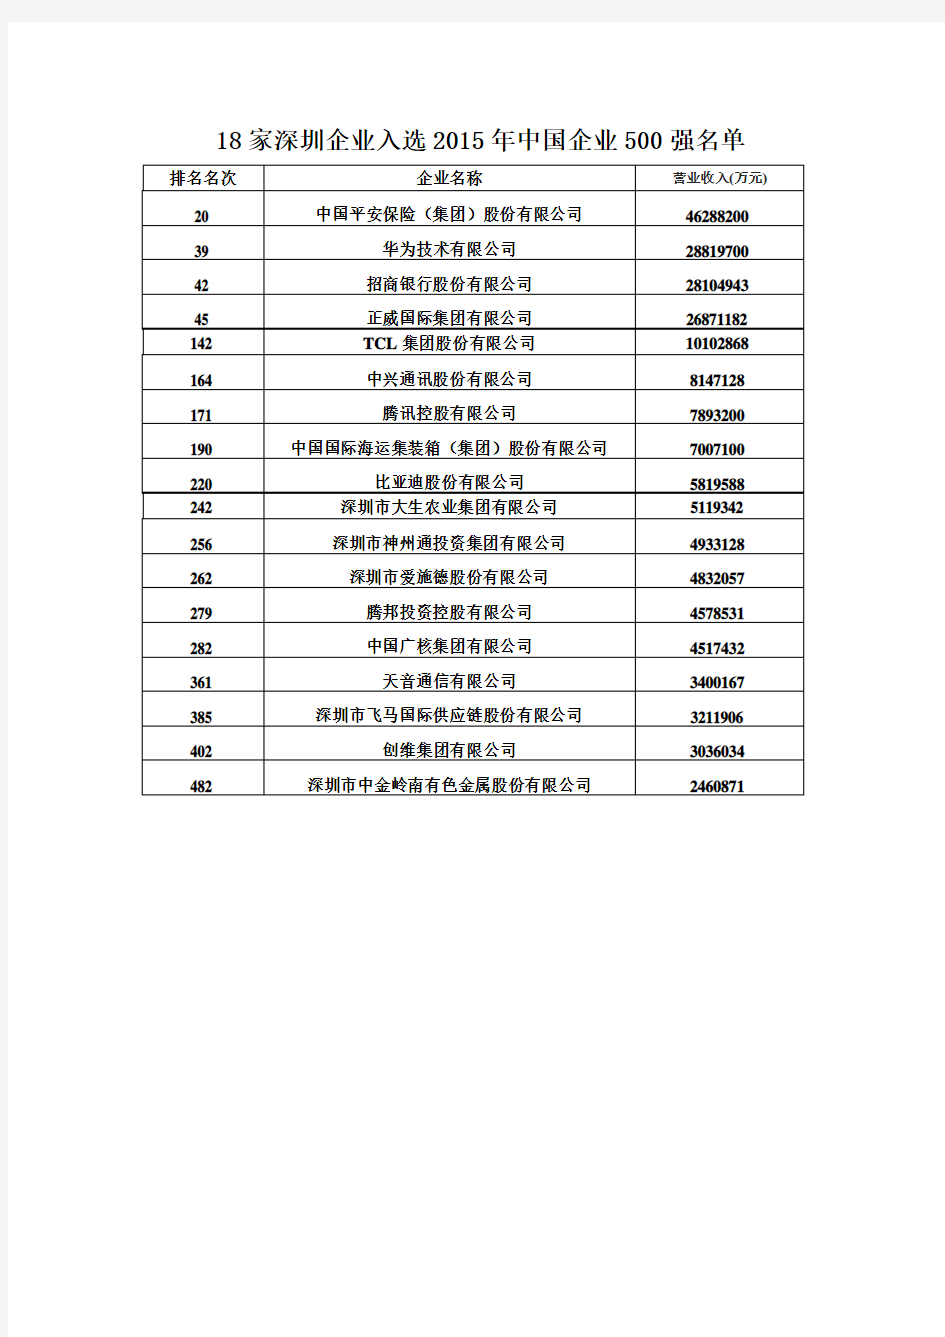 18家深圳企业入选2015年中国企业500强名单(附完整名单)